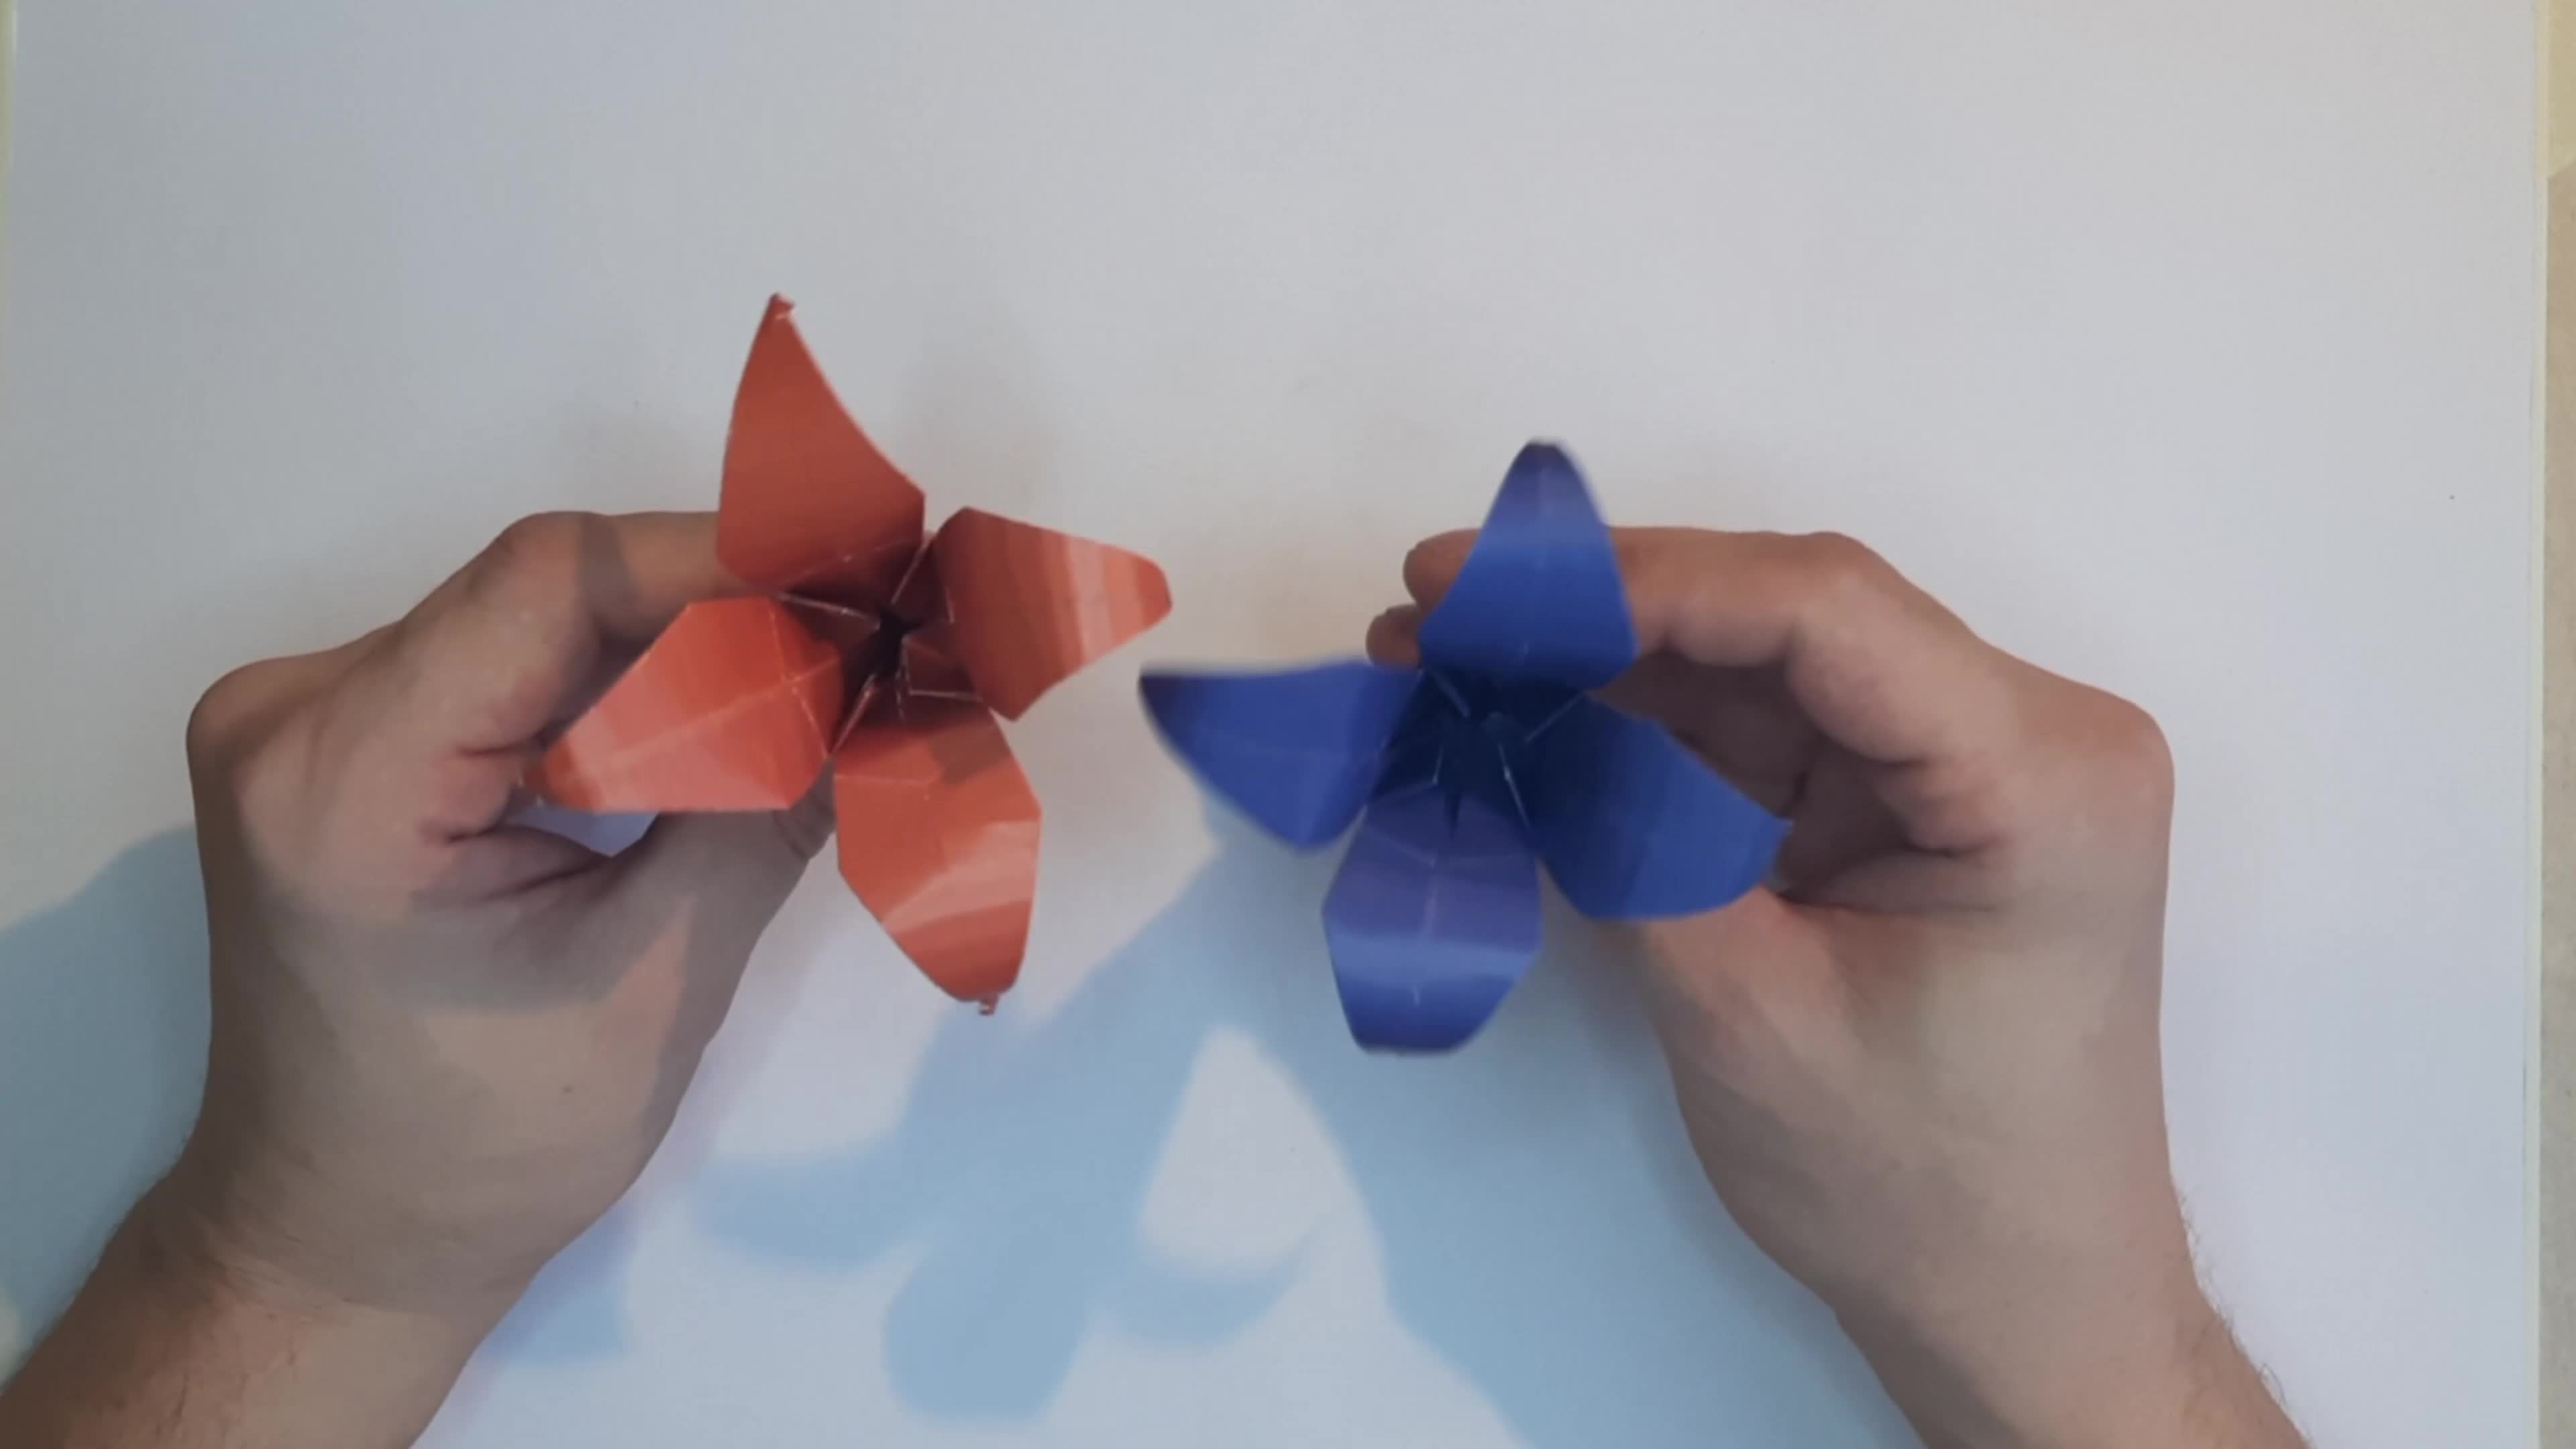 Лилия из бумаги (оригами)